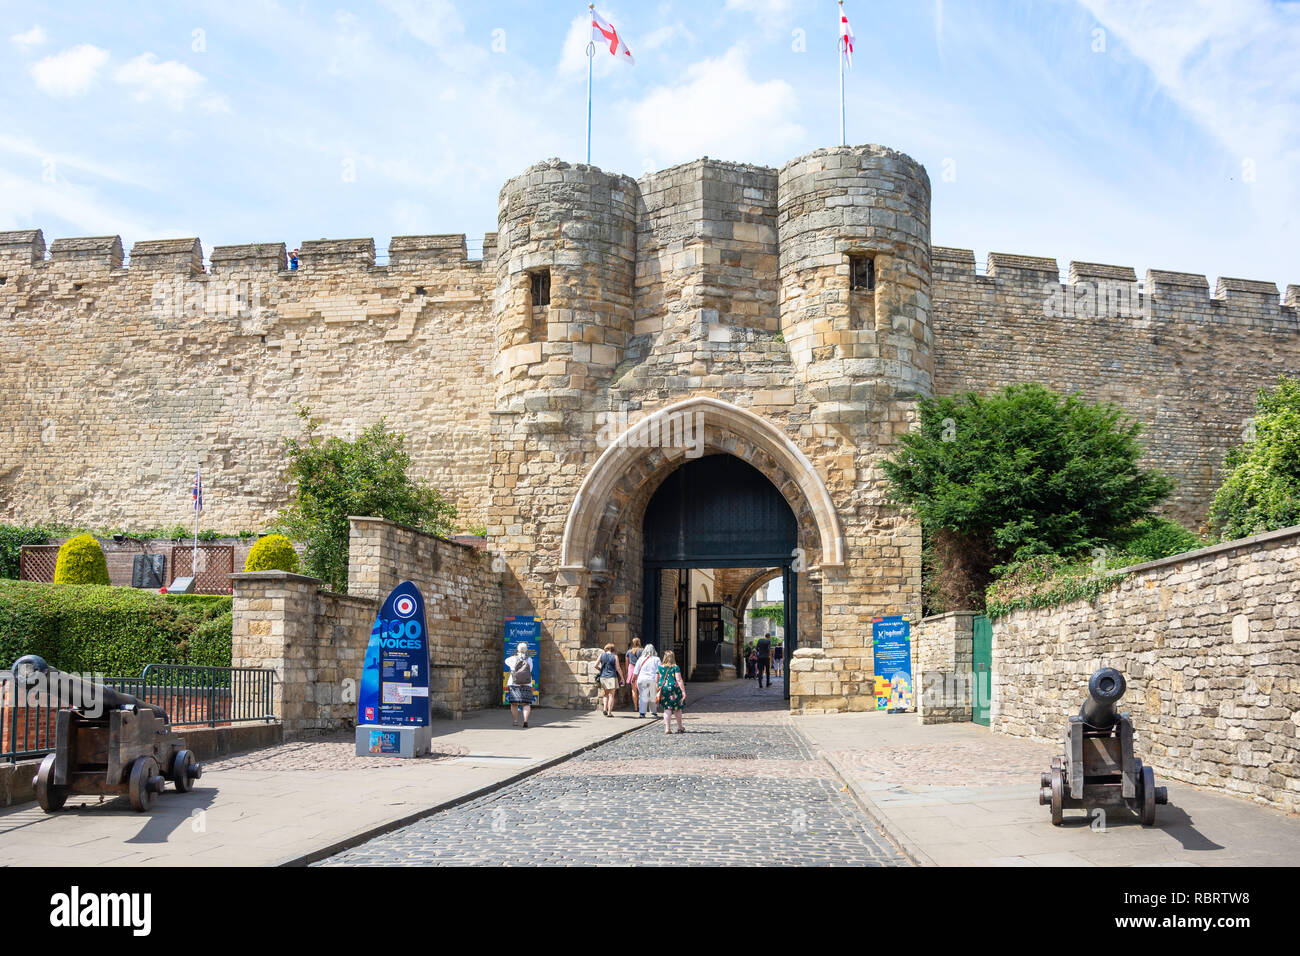 Porte de l'entrée de la colline du château, Château de Lincoln, Lincoln, Lincolnshire, Angleterre, Royaume-Uni Banque D'Images